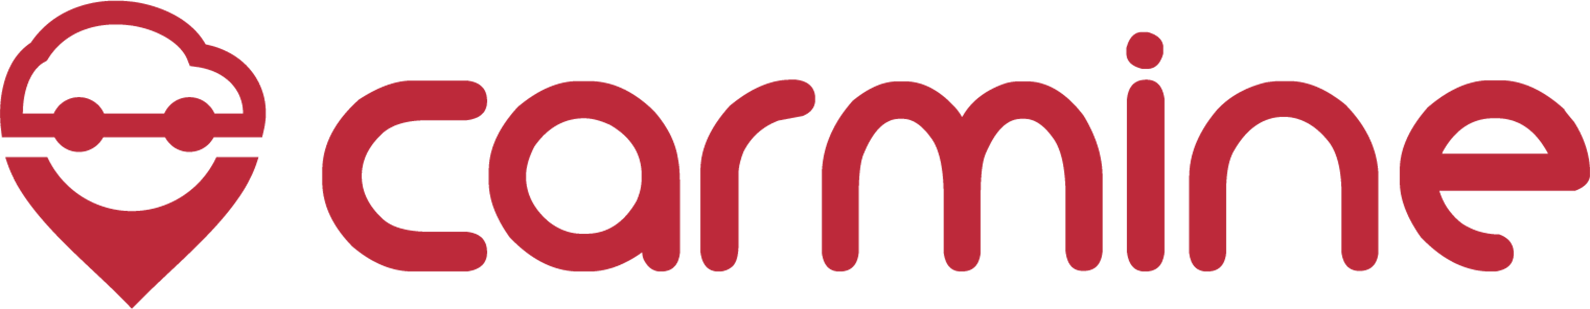 Je M'inscris - Conforama Logo 2017 (4178x835)